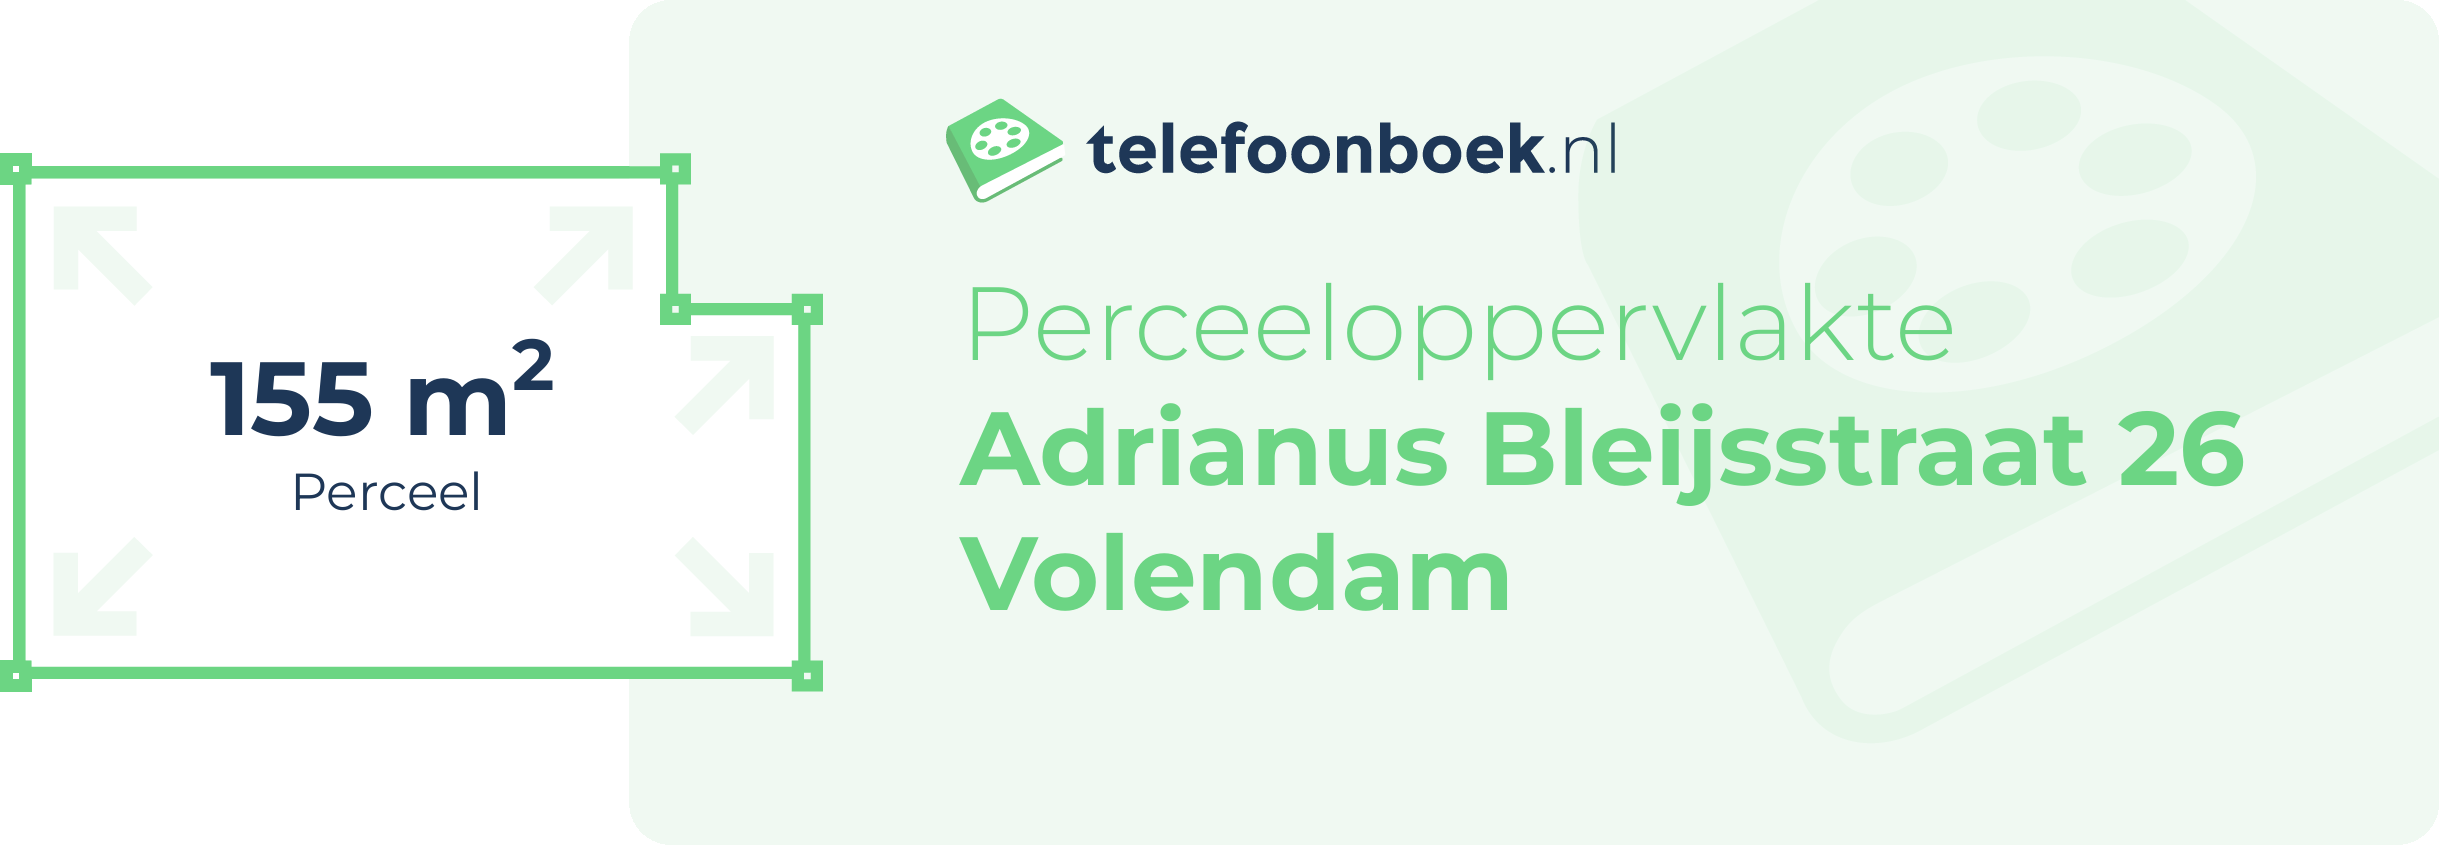 Perceeloppervlakte Adrianus Bleijsstraat 26 Volendam